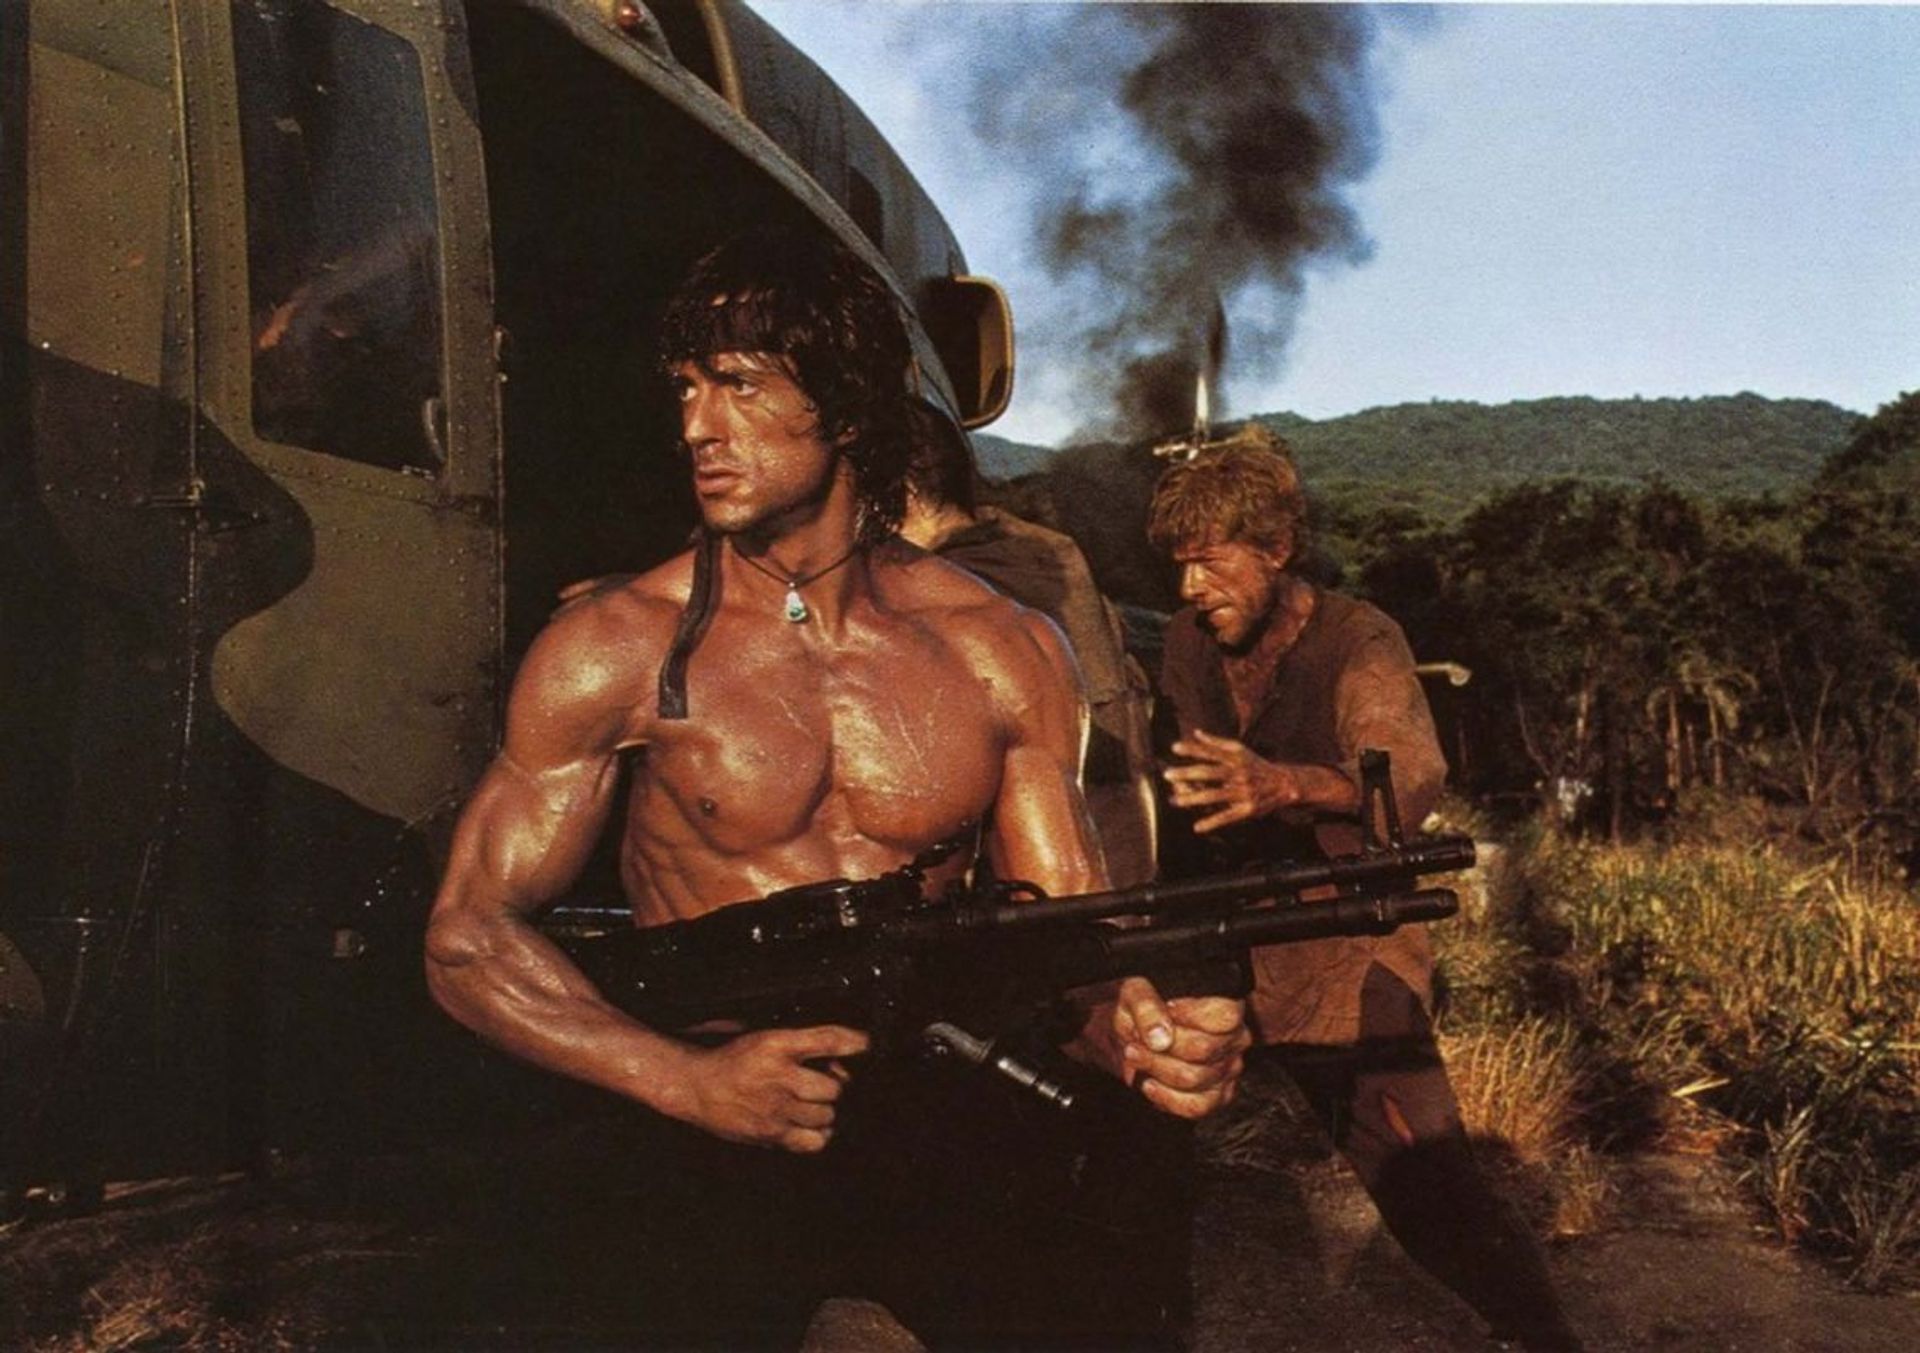 Rambo in Call of Duty